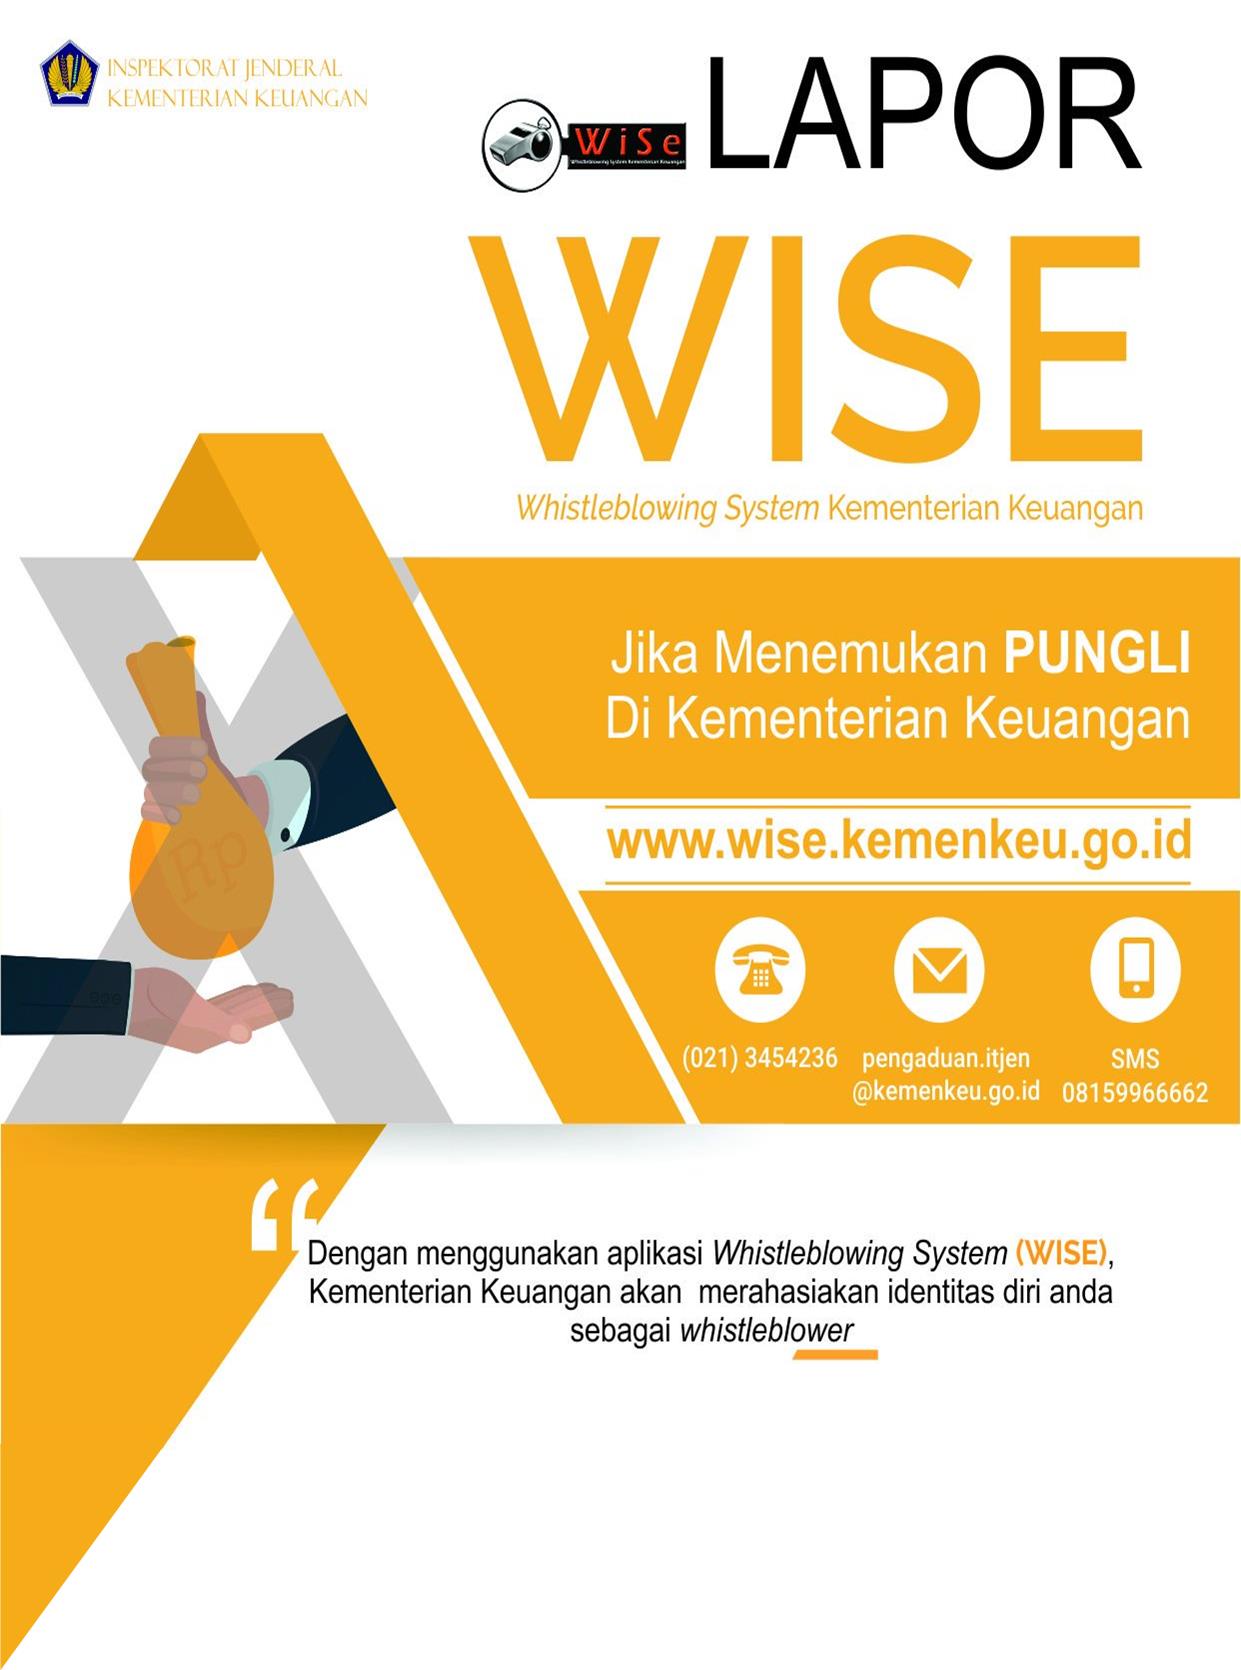 Whistleblowing System Kementerian Keuangan (WiSe)